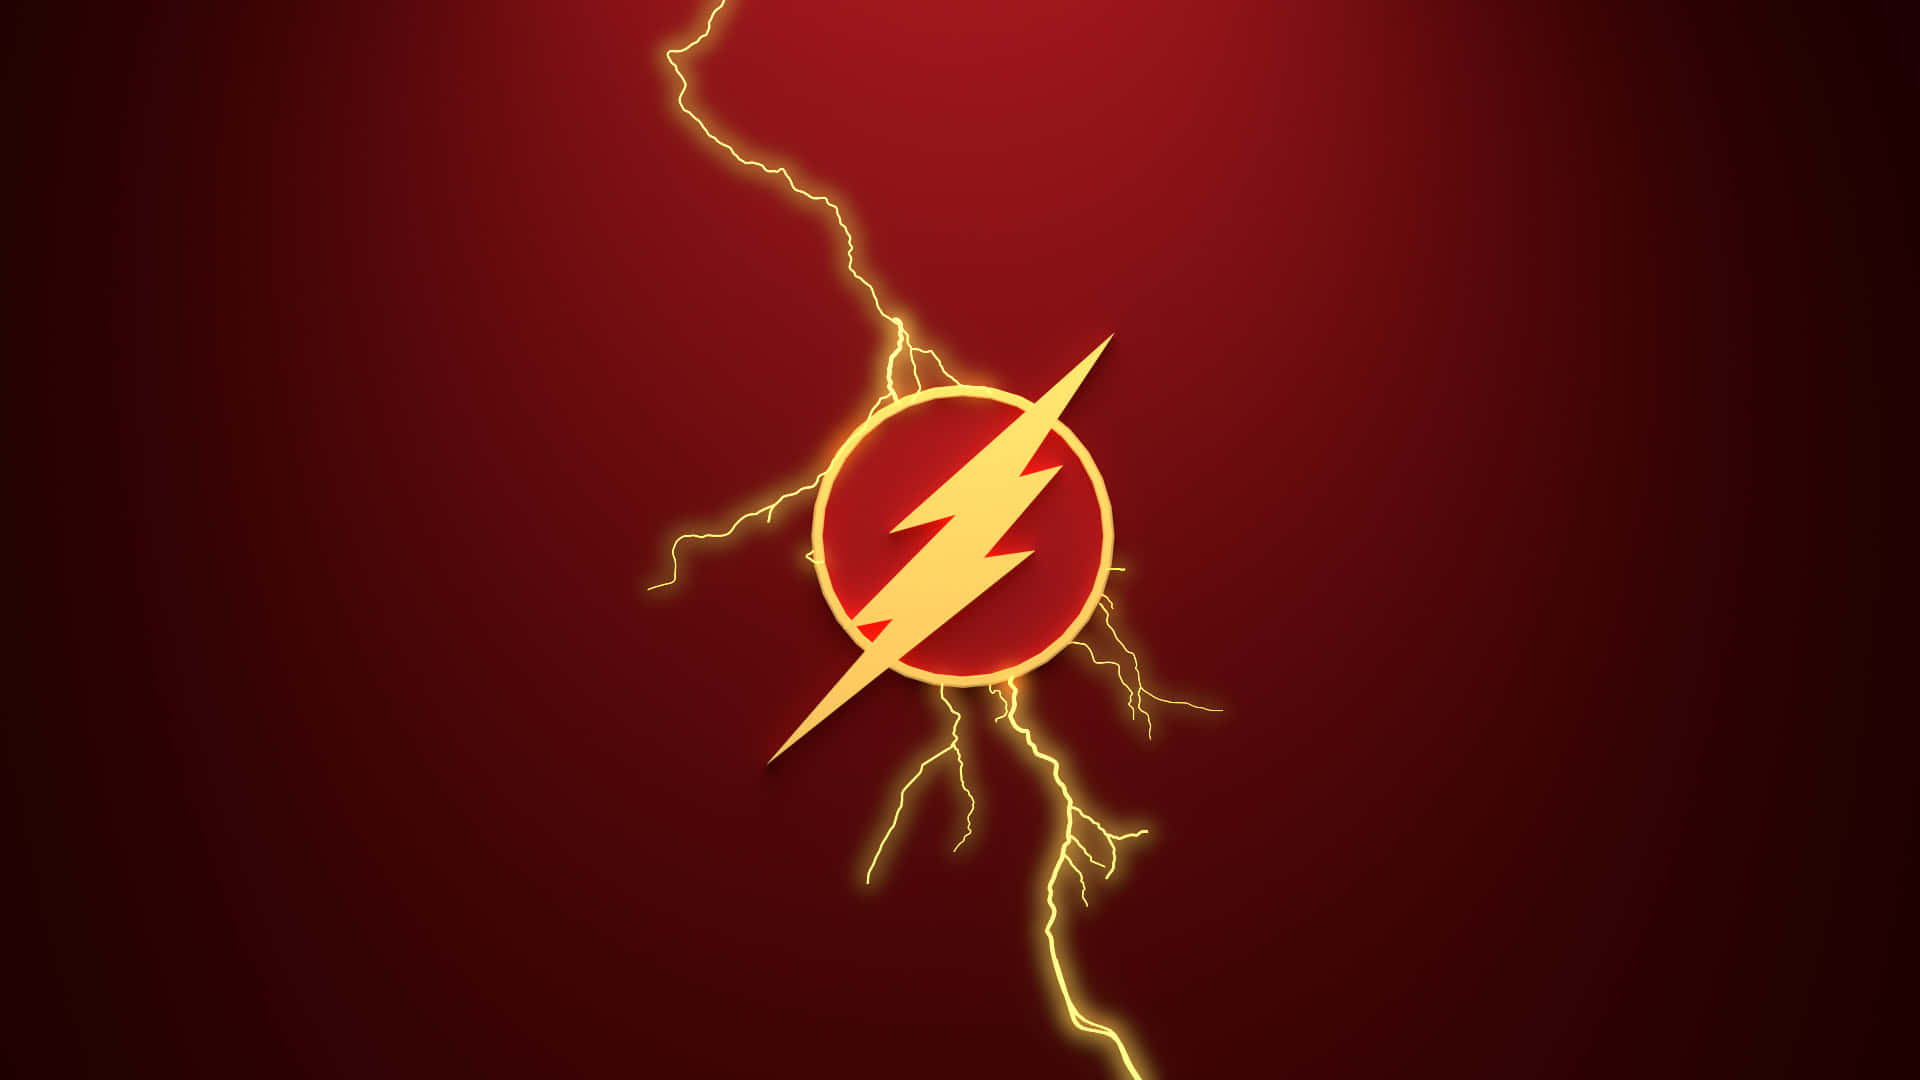 Barryallen Rennt Mit The Flash-super-geschwindigkeit.